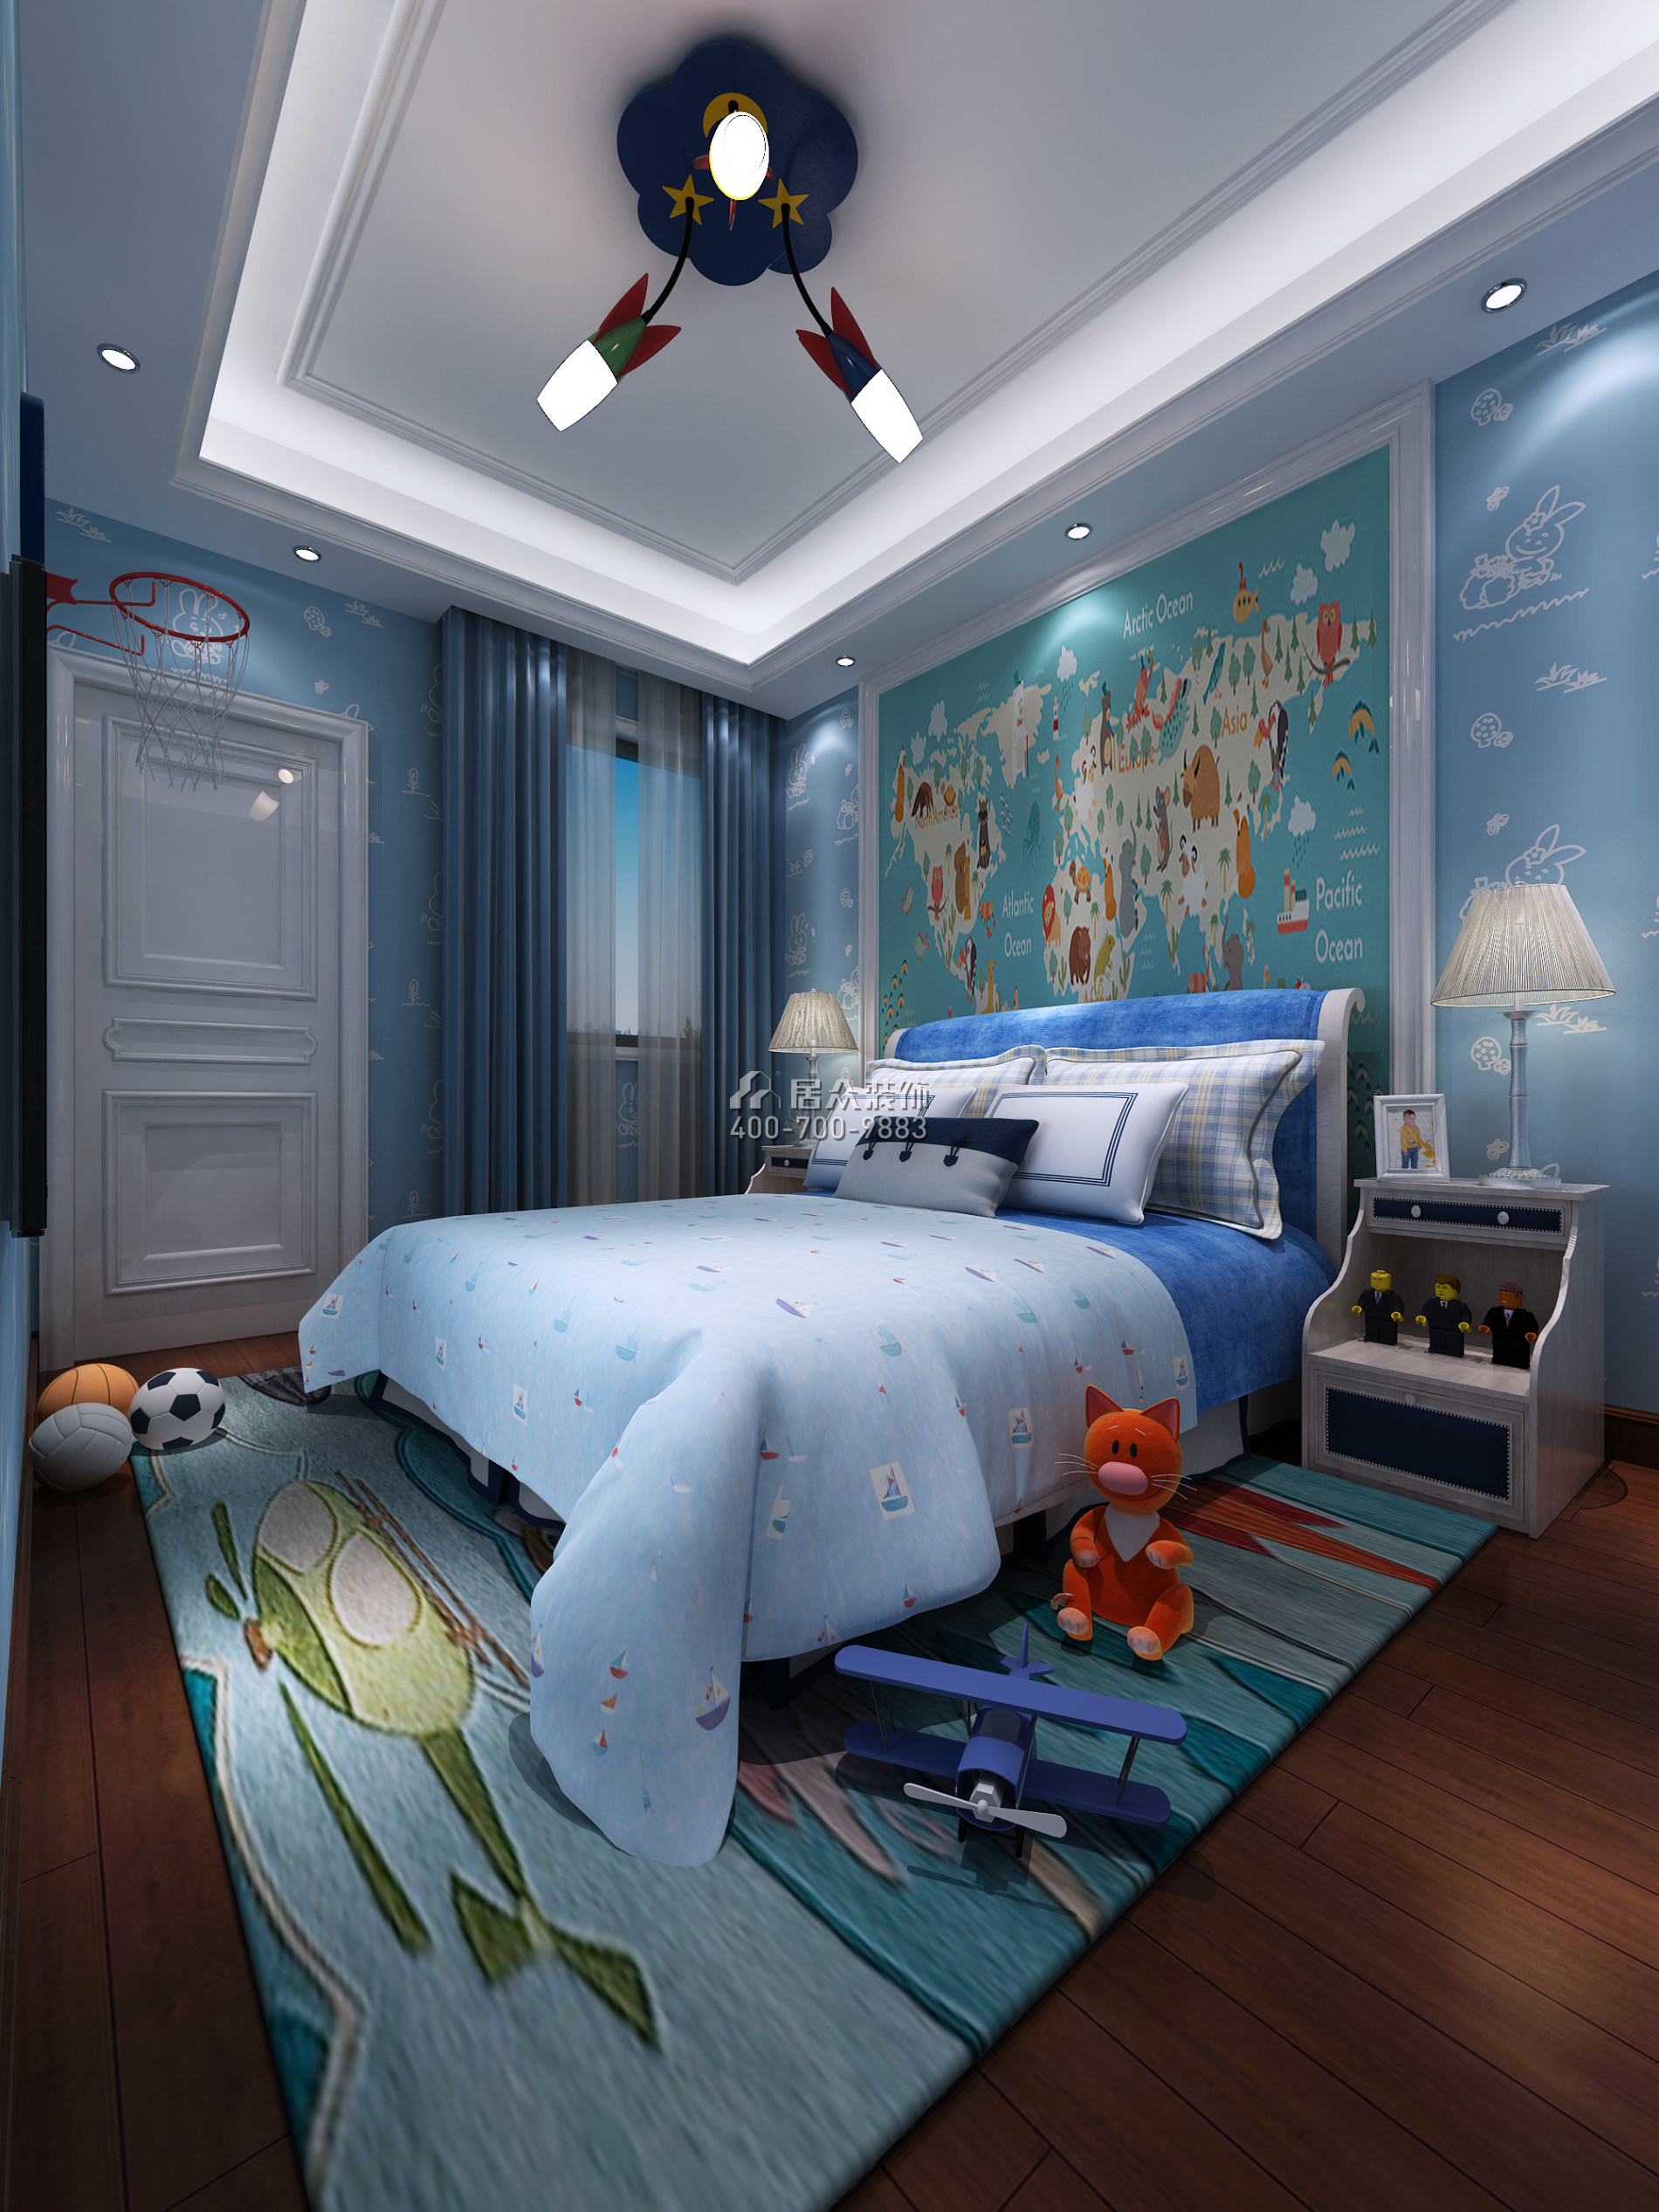 雅居樂雍華廷260平方米歐式風格別墅戶型兒童房裝修效果圖